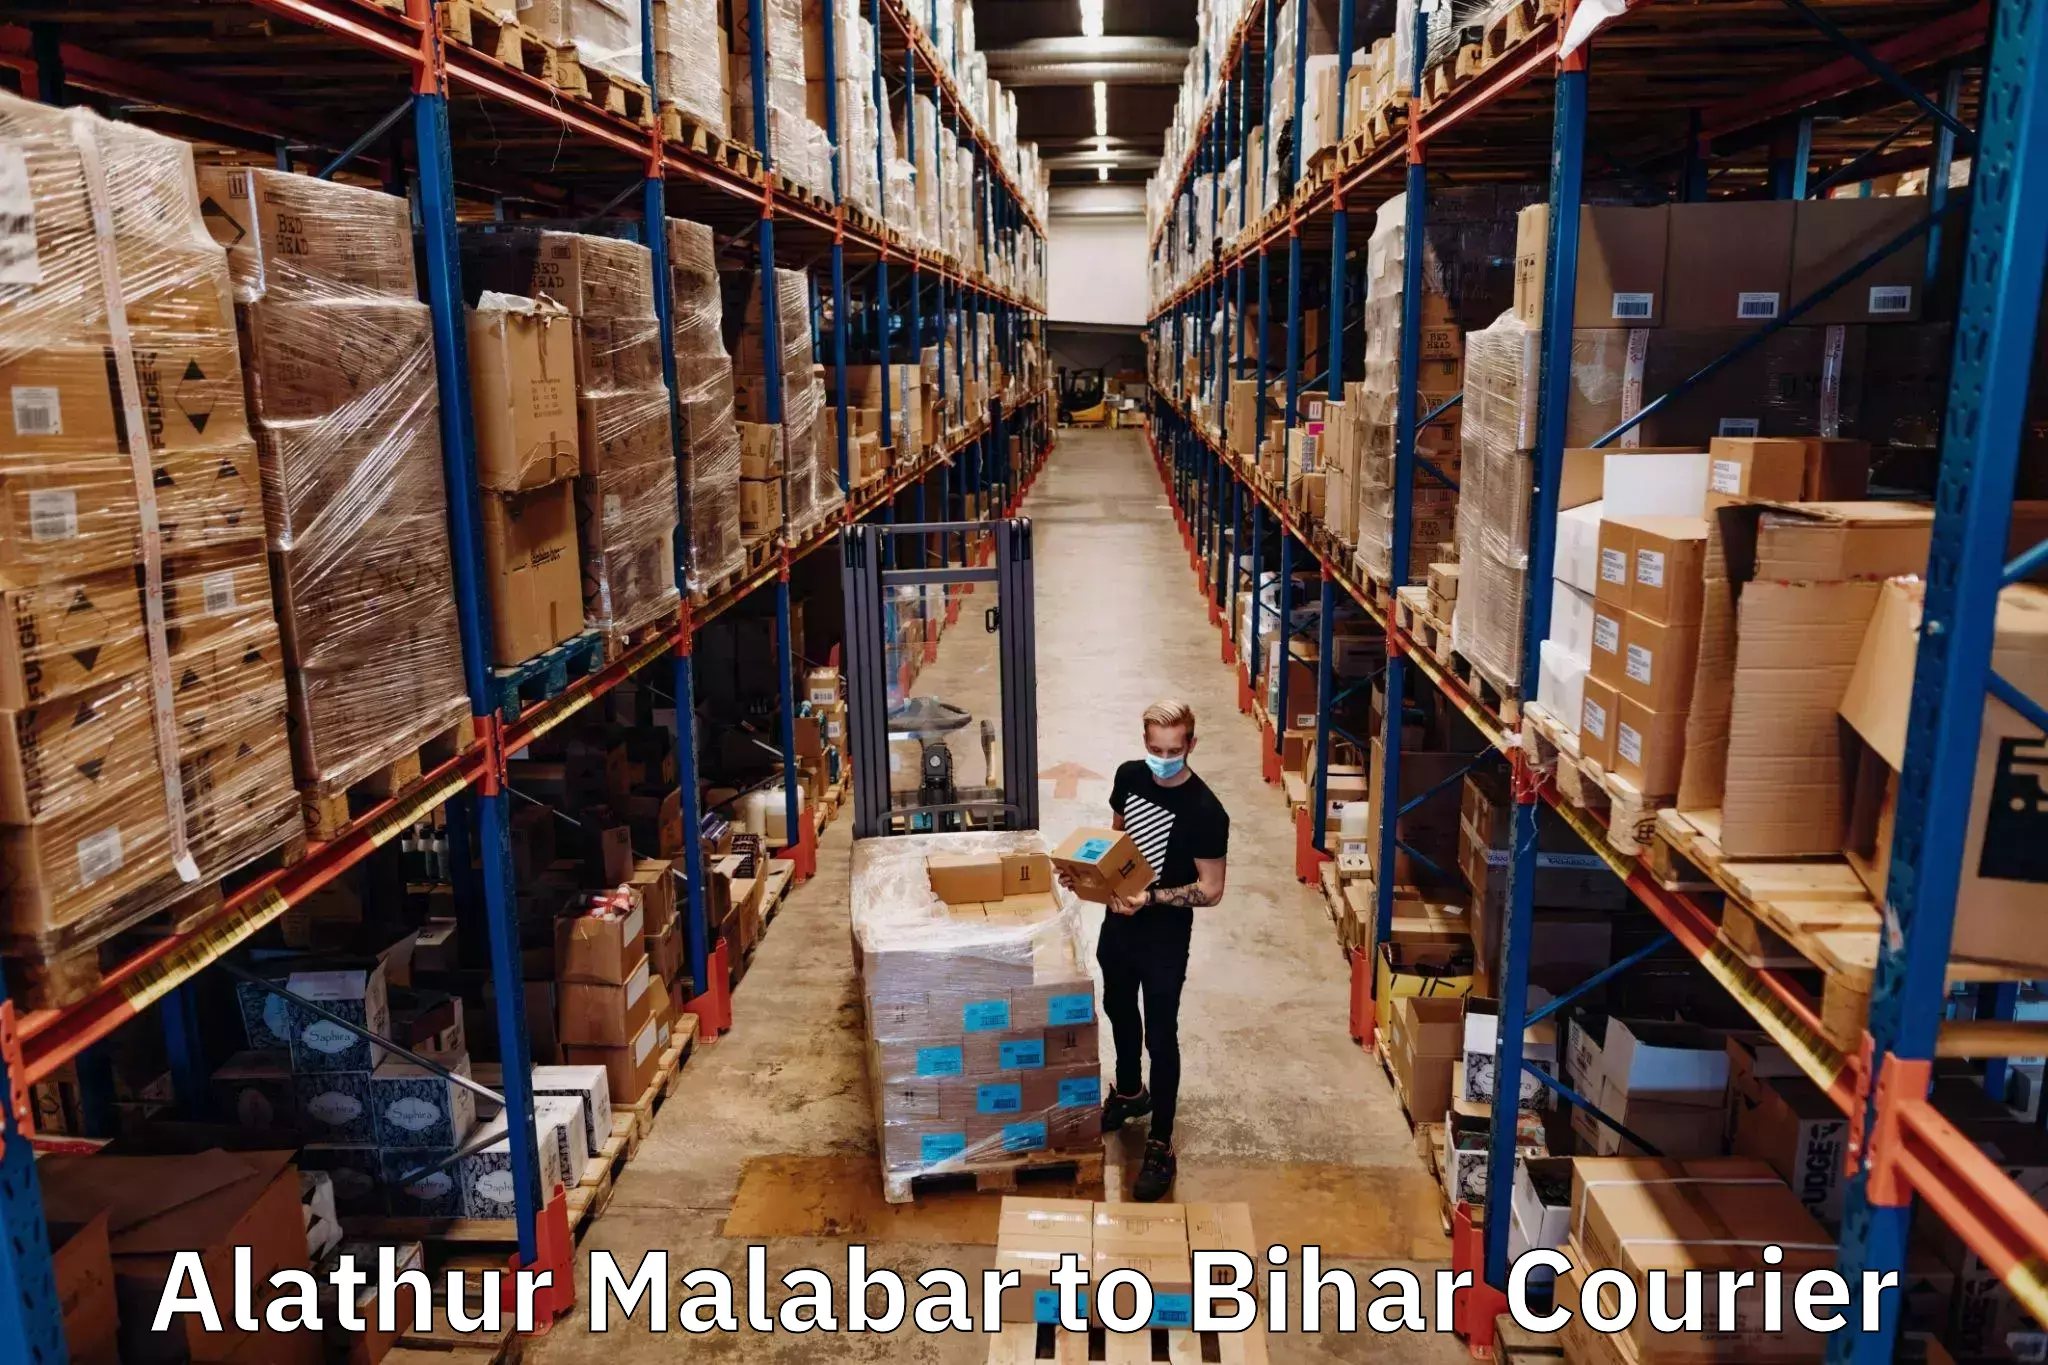 High-performance logistics Alathur Malabar to Bikramganj